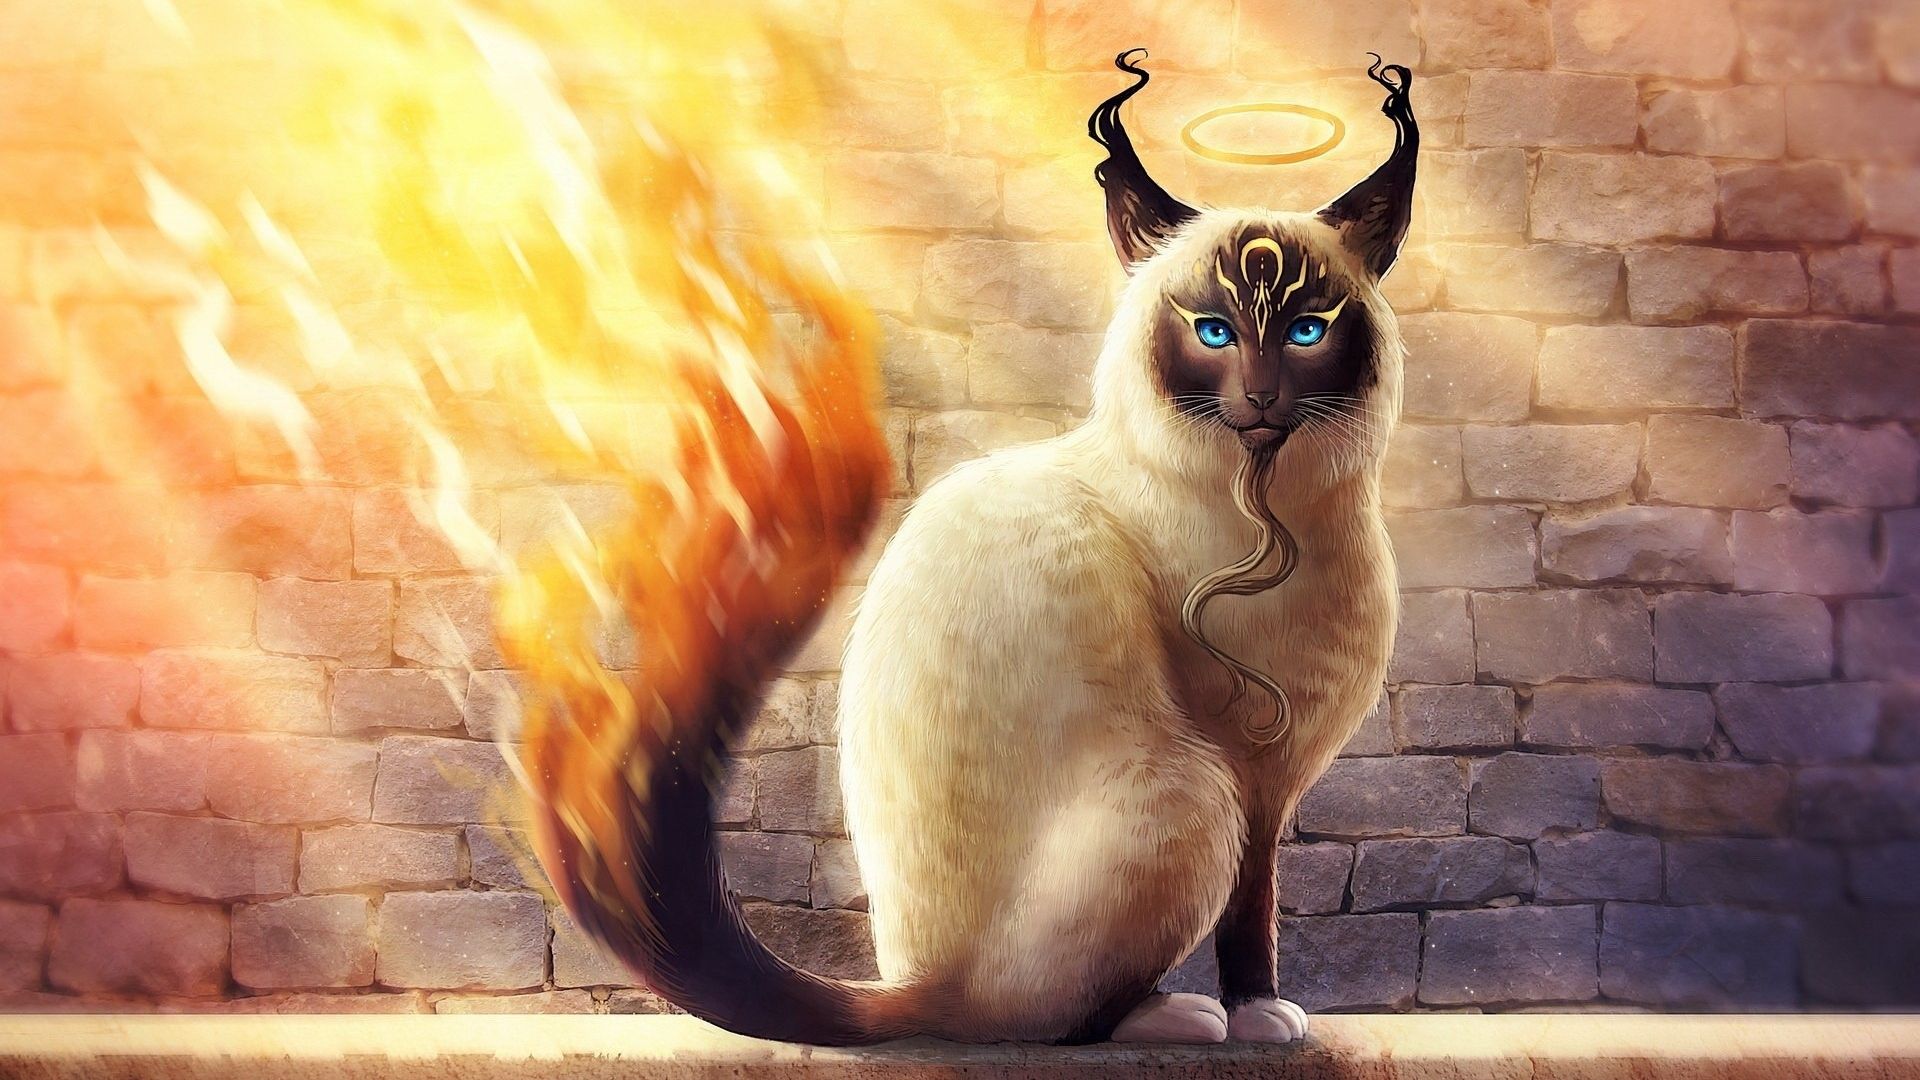 Wallpaper Cat on fire, fantasy, artwork